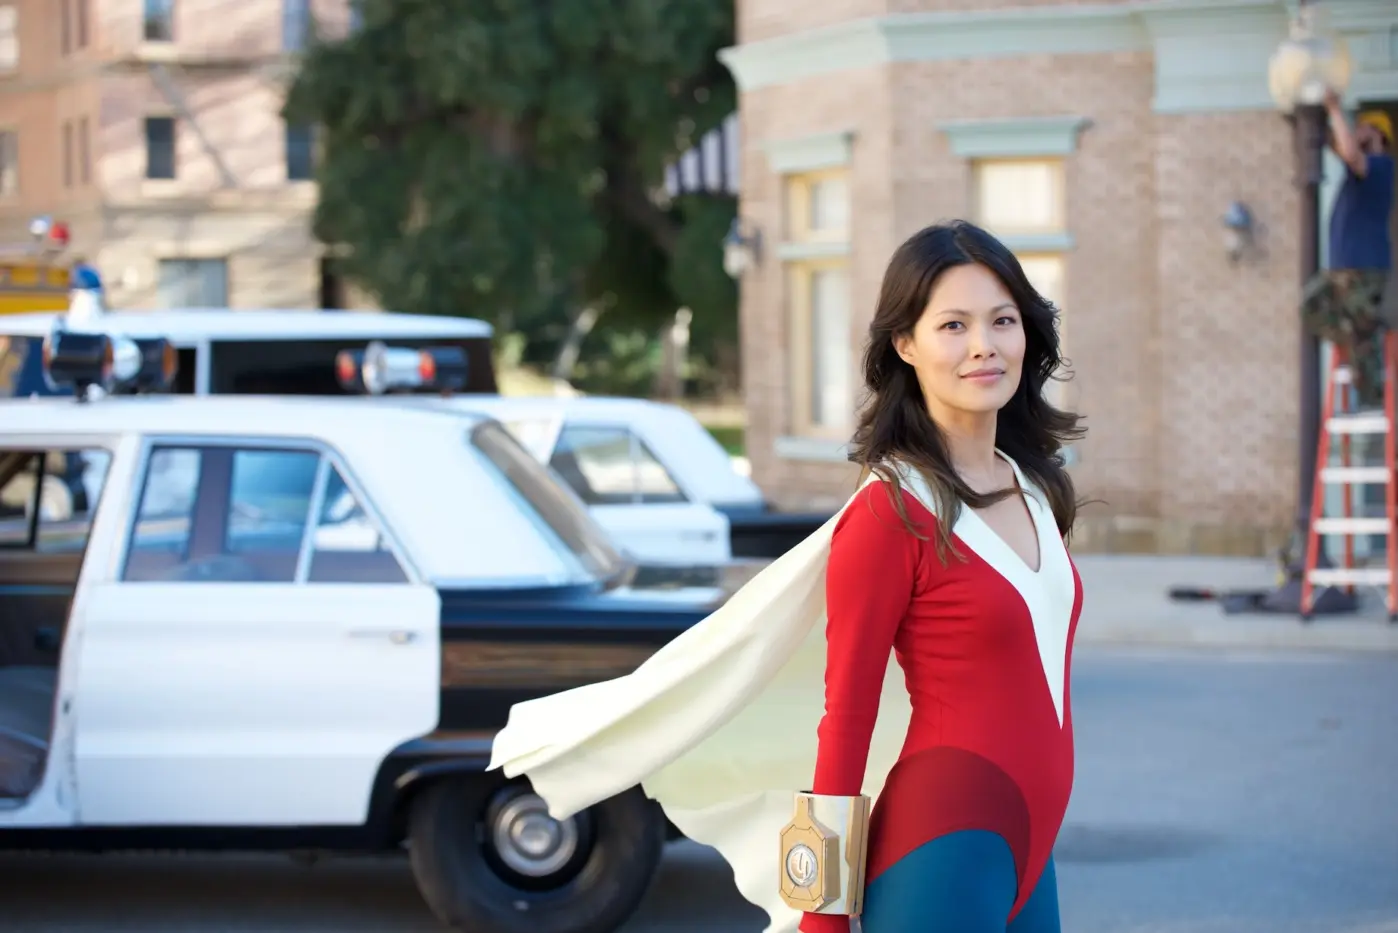 eine Straße bei Tag, im Hintergrund parken Polizeiautos, im Vordergrund steht eine junge Frau im altmodischen Superheldenanzug mit roten Oberteil, weißgelben Umhang und blauer Hose, sie lächelt in die Kamera